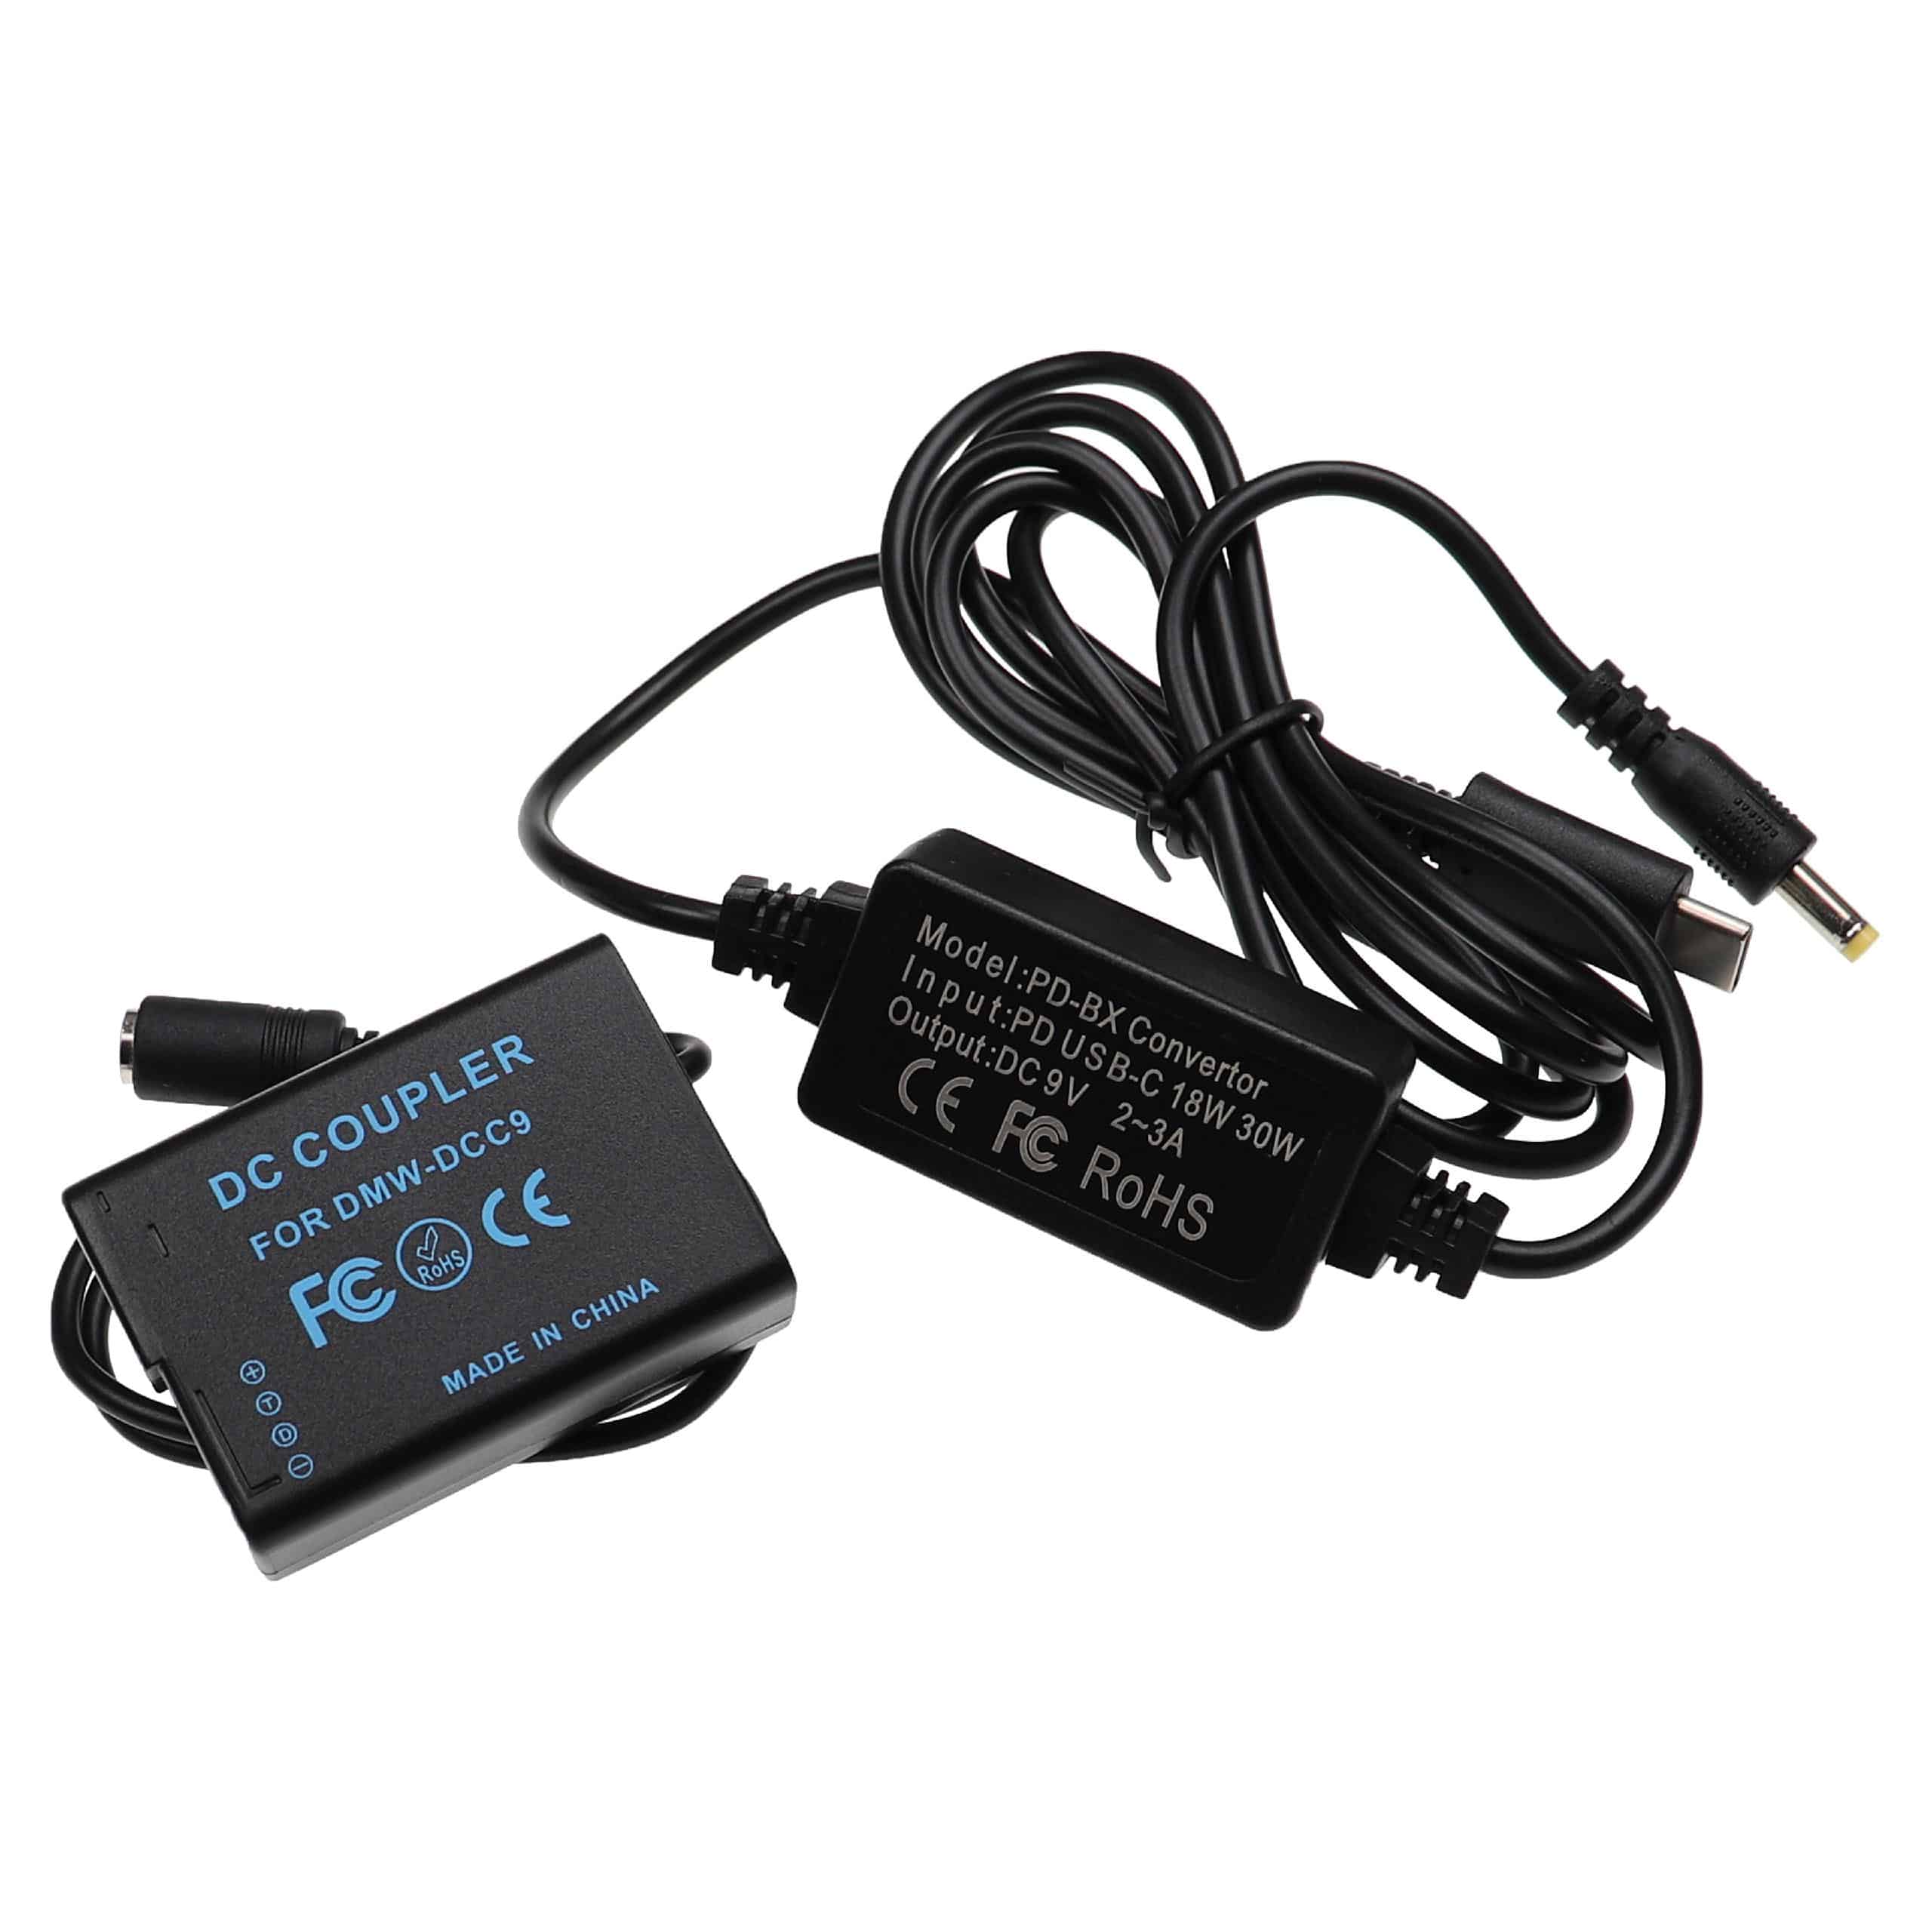 Zasilacz USB do aparatu zam. DMW-AC8EGDMW-AC8 + adapter zam. Panasonic DMW-DCC9 - 2 m, 9 V 3,0 A